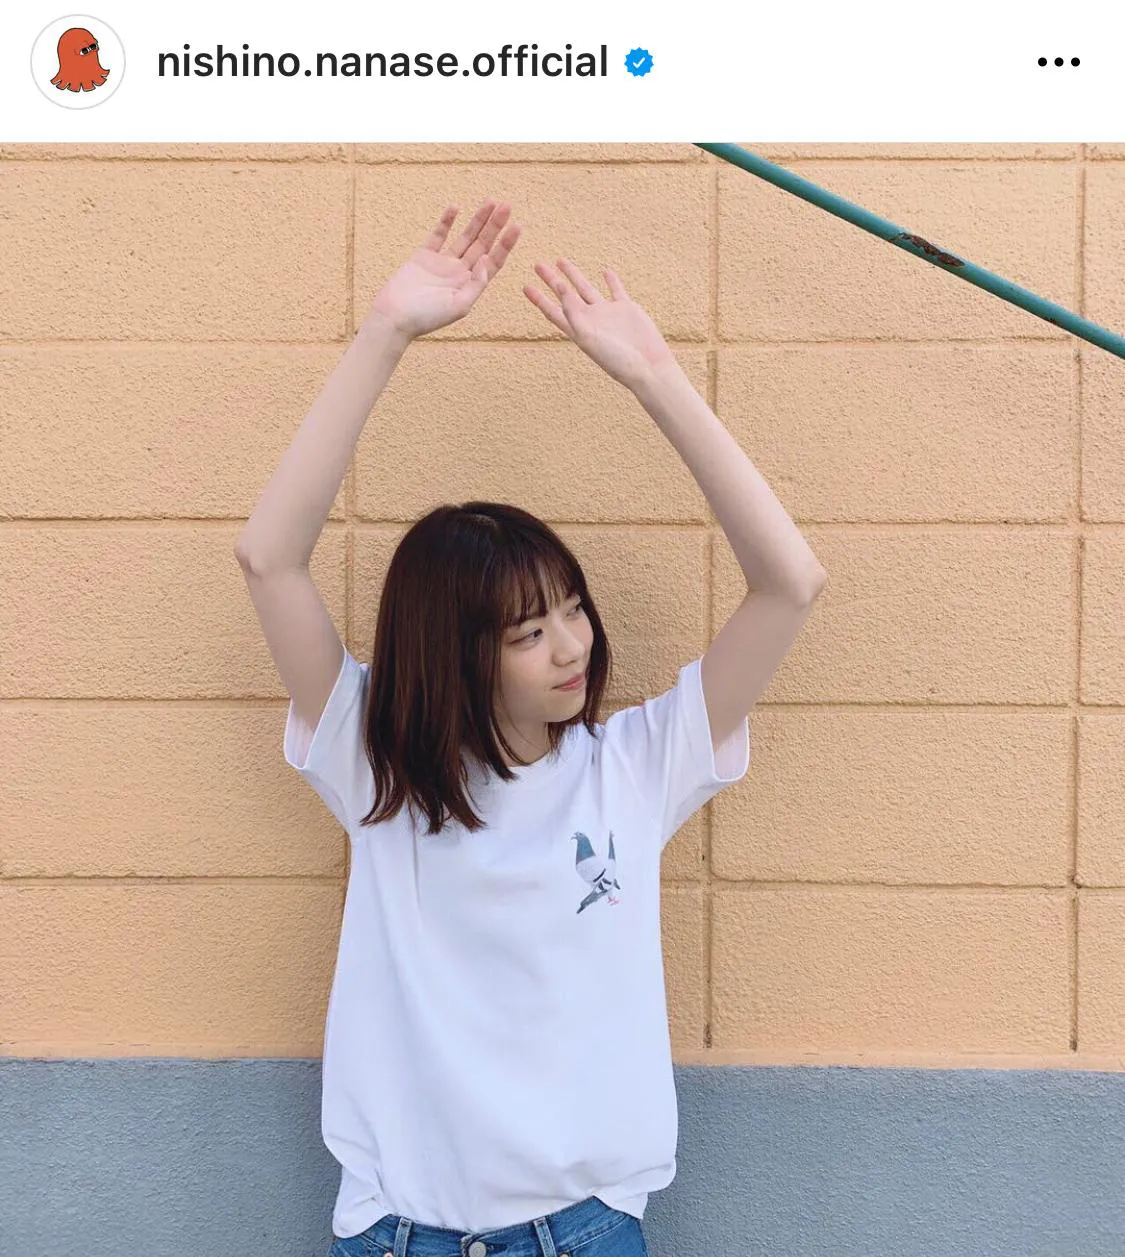 ※西野七瀬公式Instagram(nishino.nanase.official)より